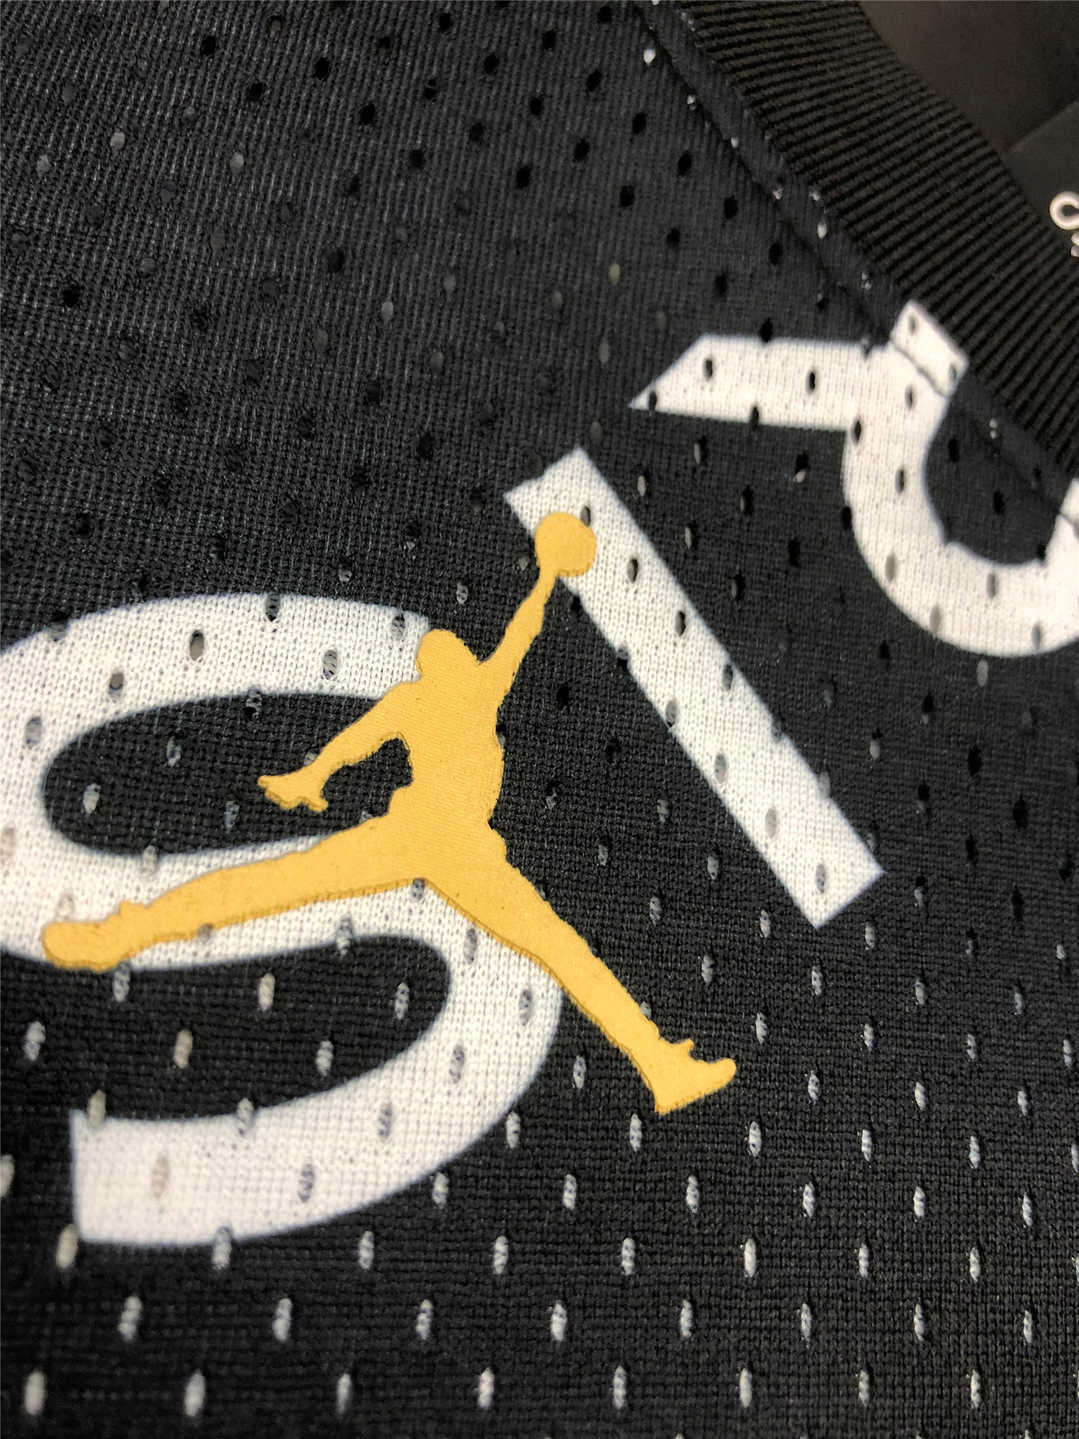 20/21 PSG x Jordan NBA Black Jersey - Click Image to Close